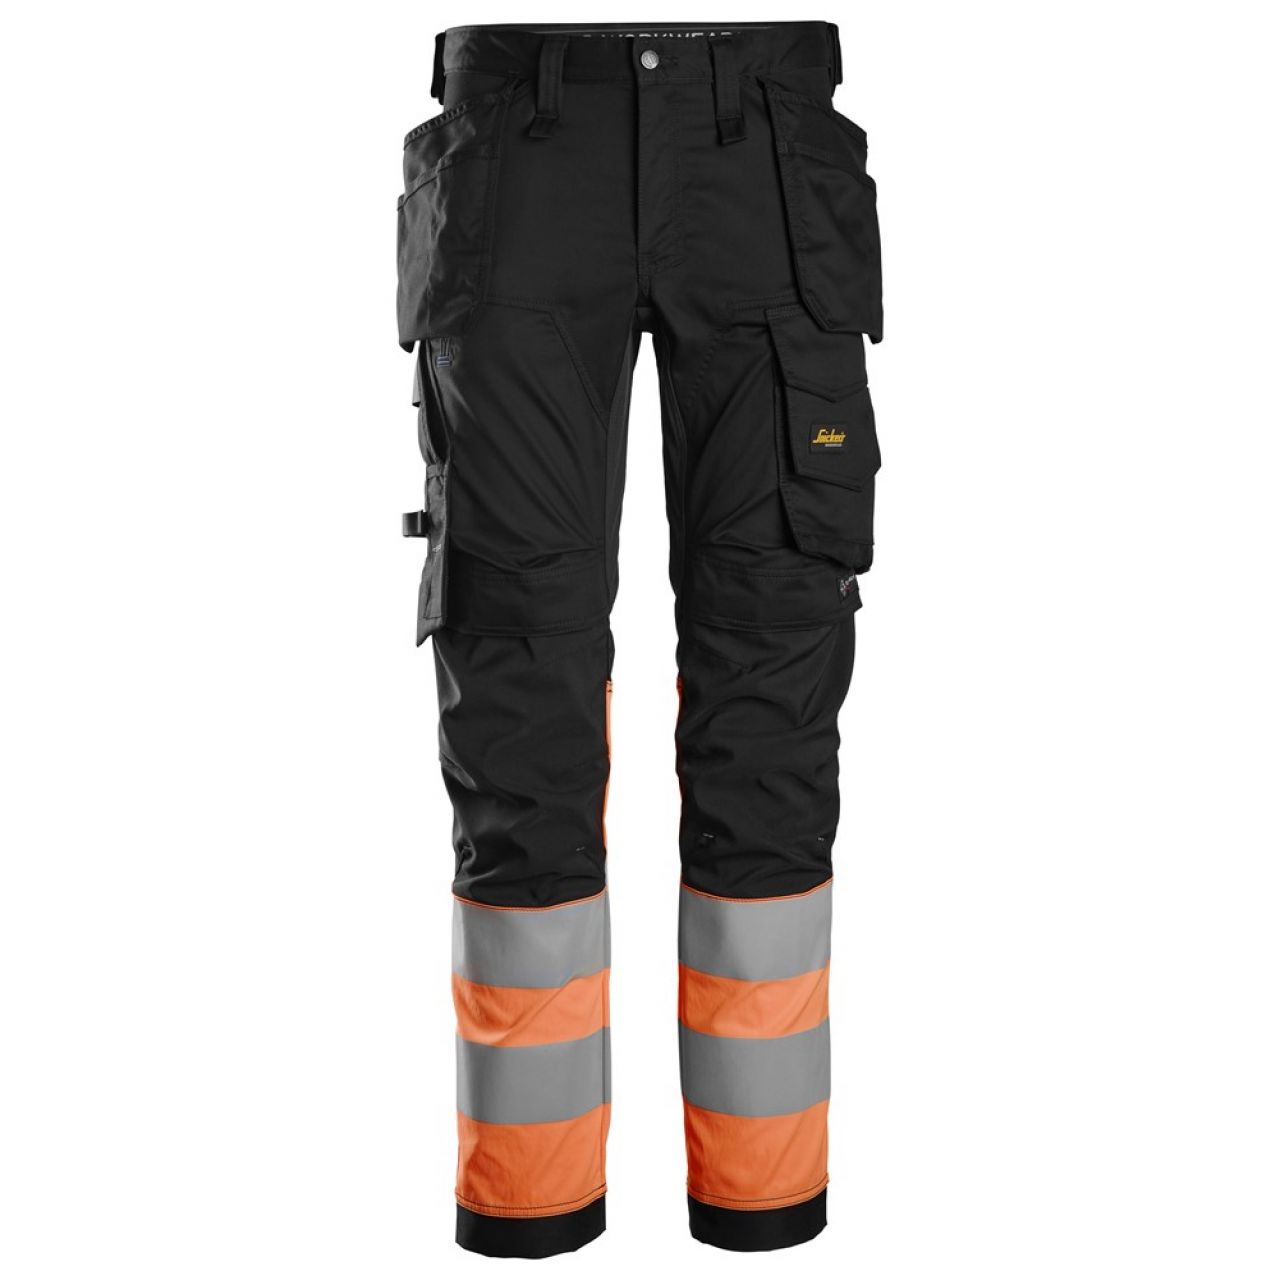 6234 Pantalones largos de trabajo elásticos de alta visibilidad clase 1 con bolsillos flotantes negro-naranja talla 156